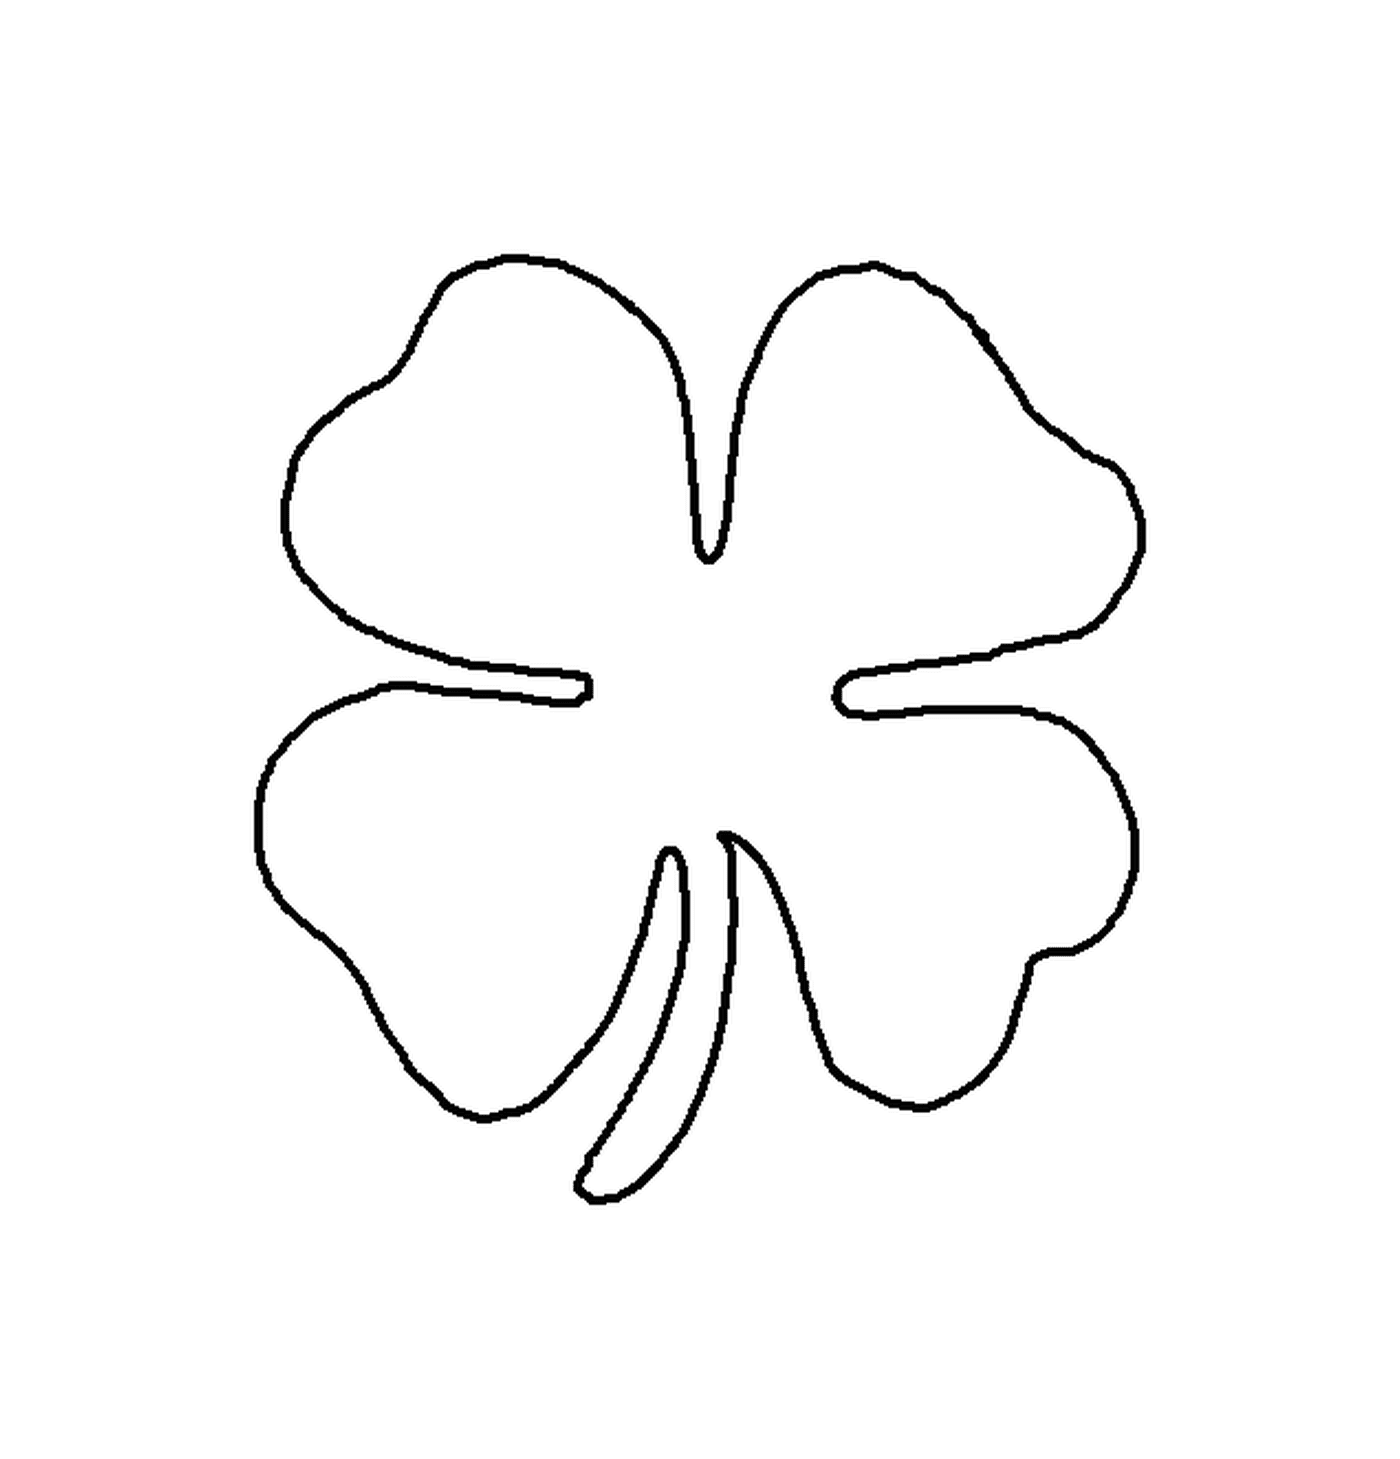  Shamrock, símbolo de Irlanda para San Patricio 